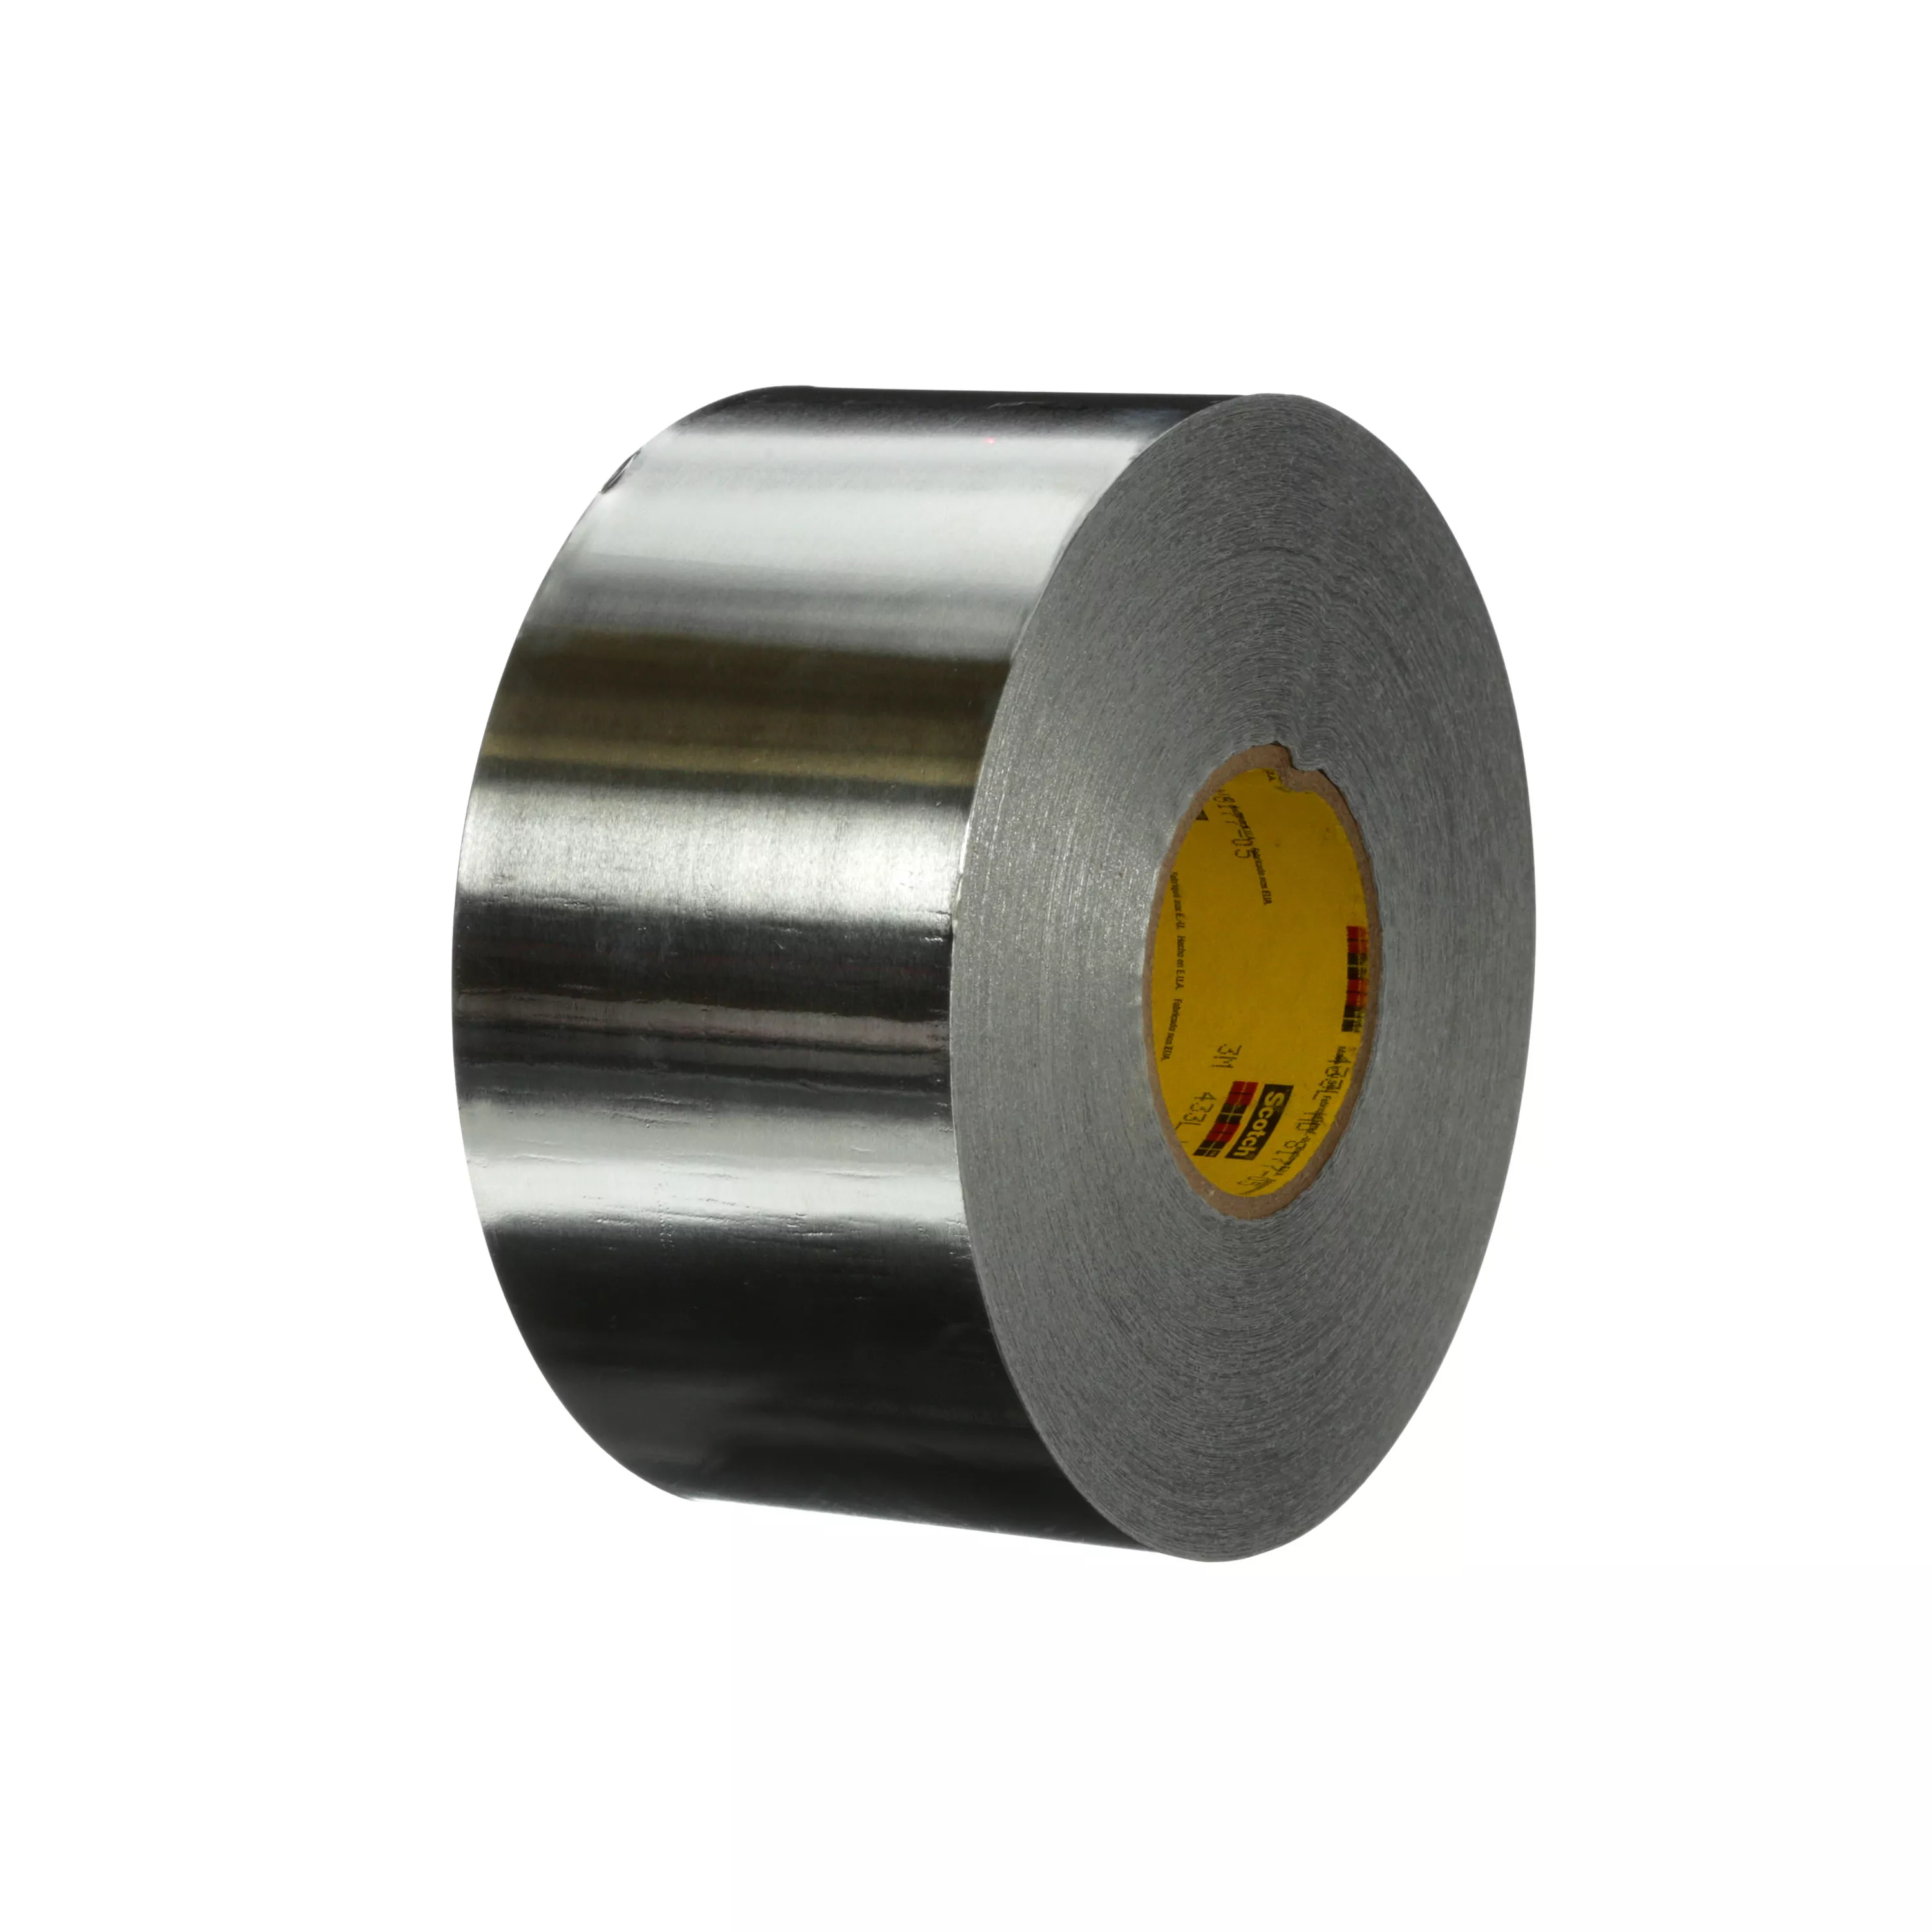 3M™ High Temperature Aluminum Foil Tape 433L, Silver, 4 in x 180 yd, 3.5
mil, 2 Rolls/Case